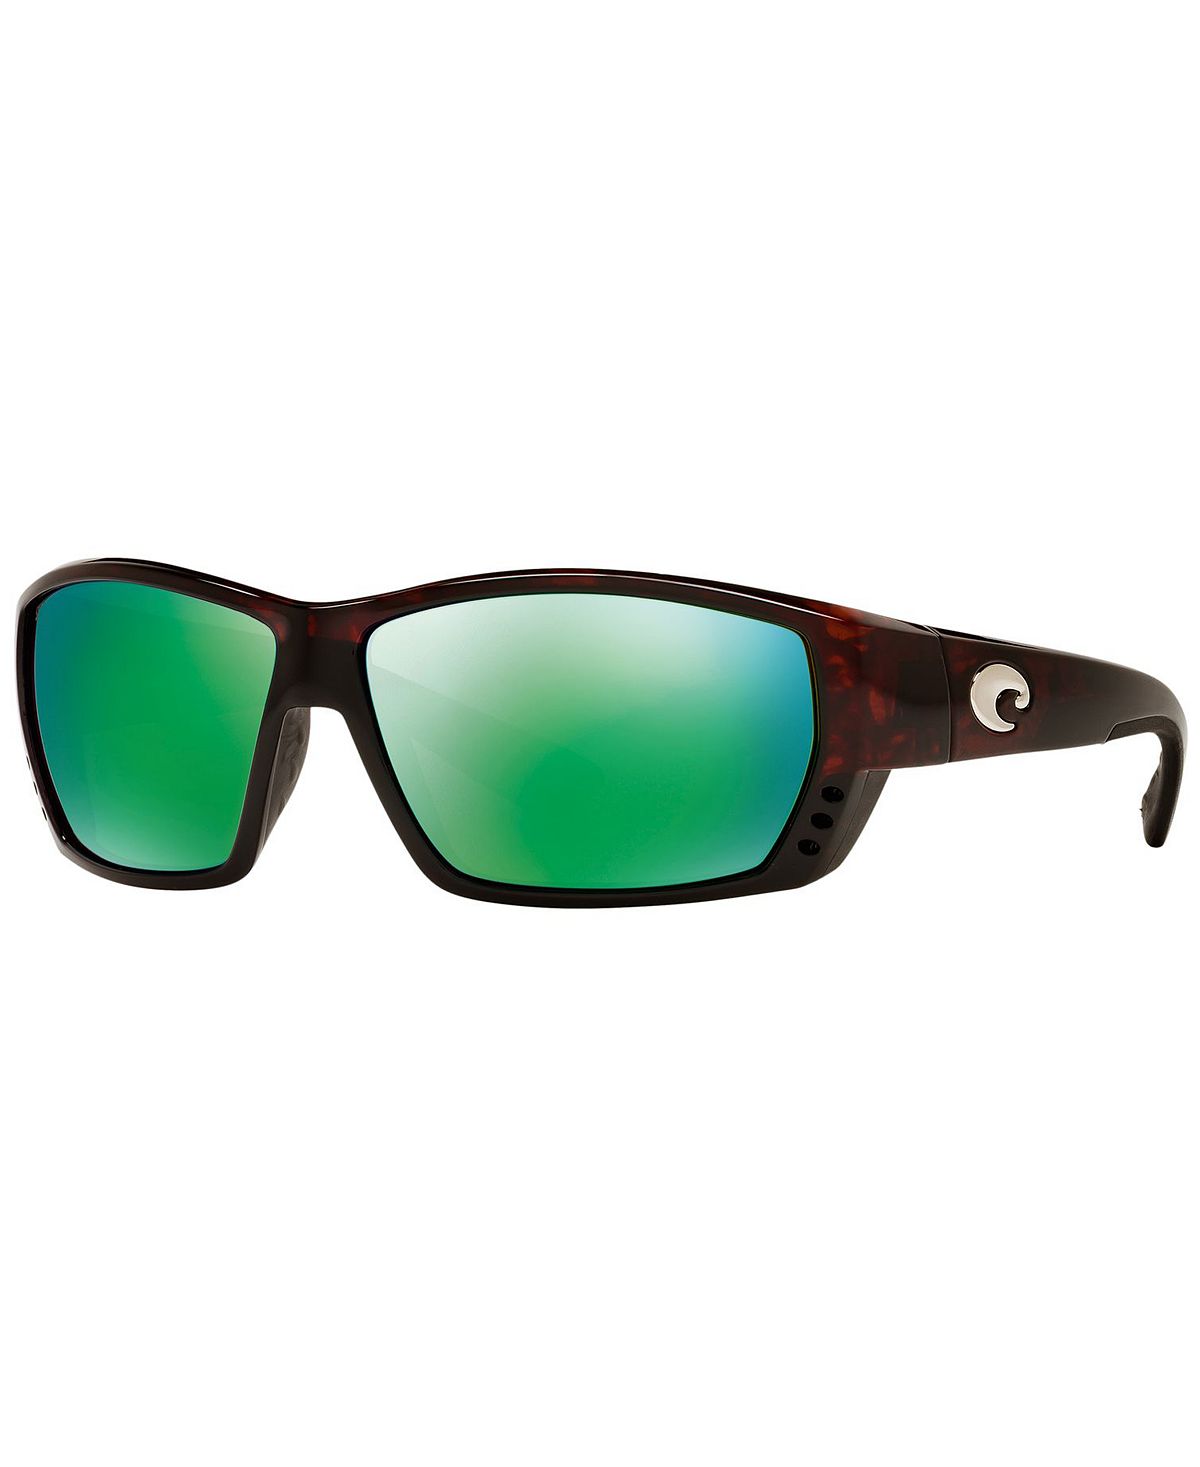 Поляризованные солнцезащитные очки, TUNA ALLEY Costa Del Mar highlands 8x19 5x120 d72 6 et38 gun metallic mirror face